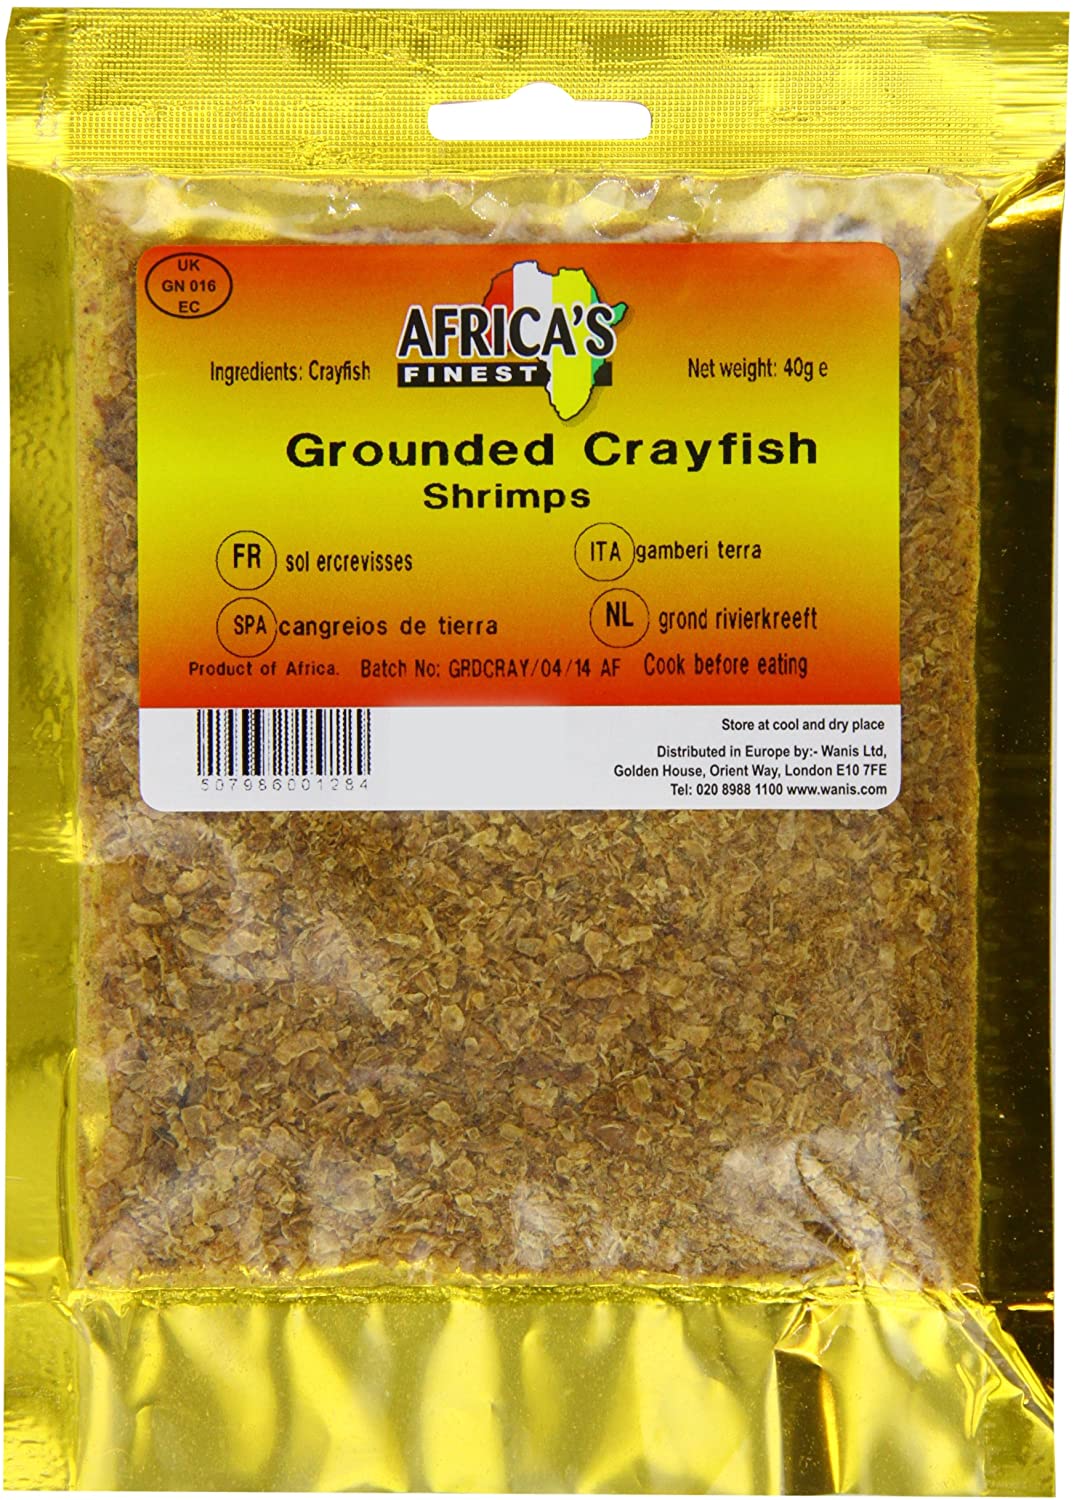 Africa's Finest Ground Crayfish 40g Box of 10